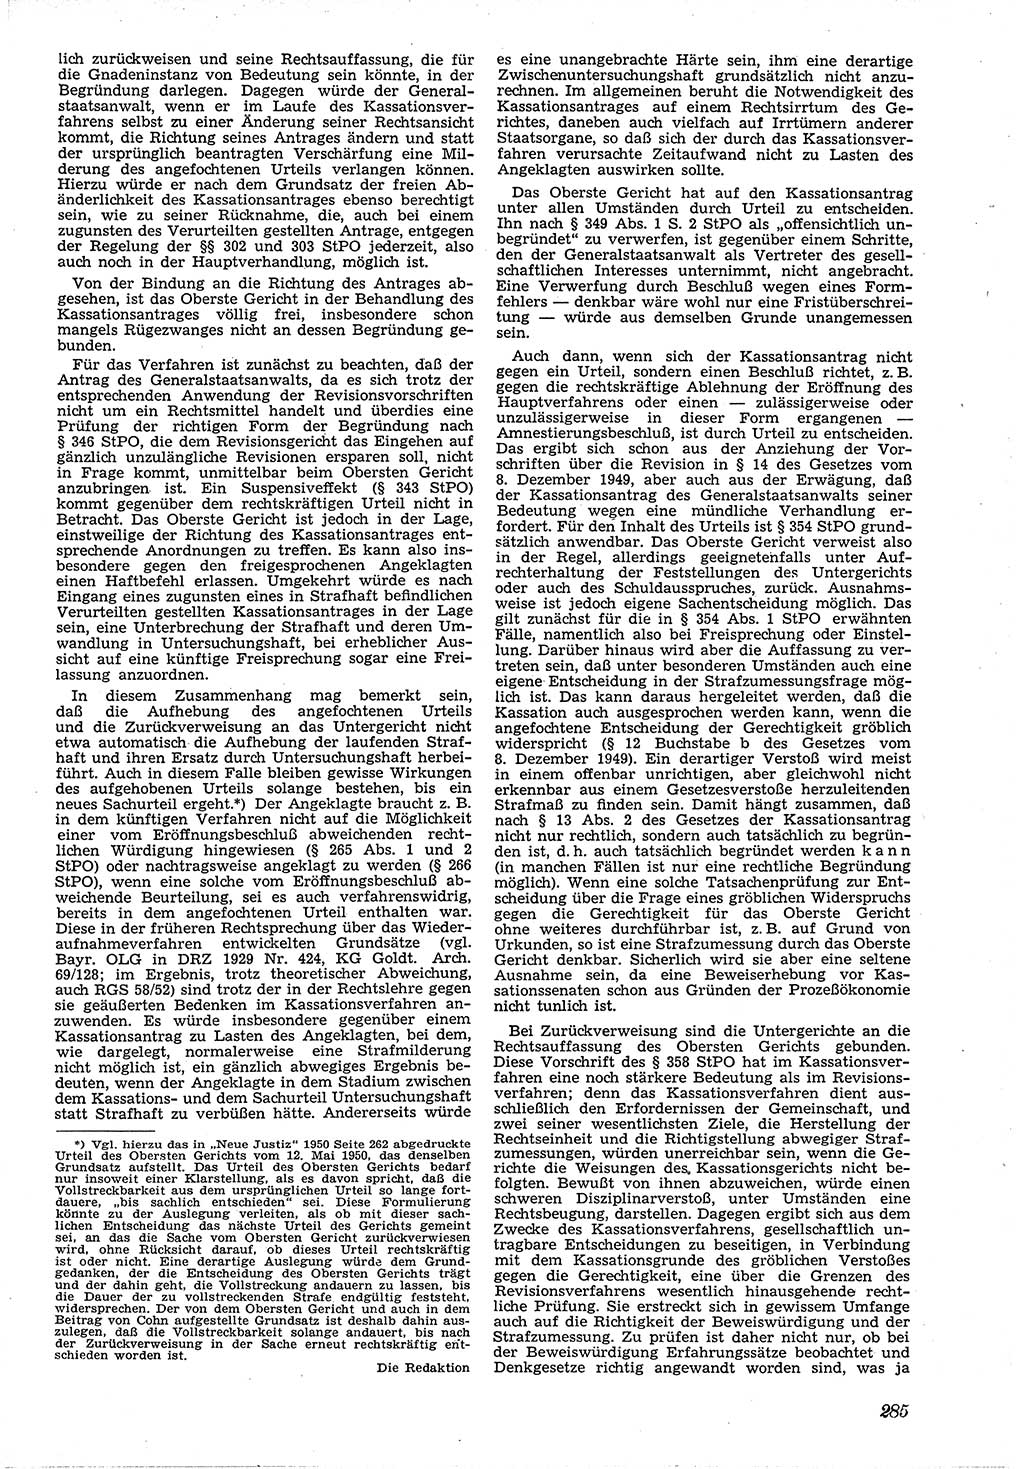 Neue Justiz (NJ), Zeitschrift für Recht und Rechtswissenschaft [Deutsche Demokratische Republik (DDR)], 4. Jahrgang 1950, Seite 285 (NJ DDR 1950, S. 285)